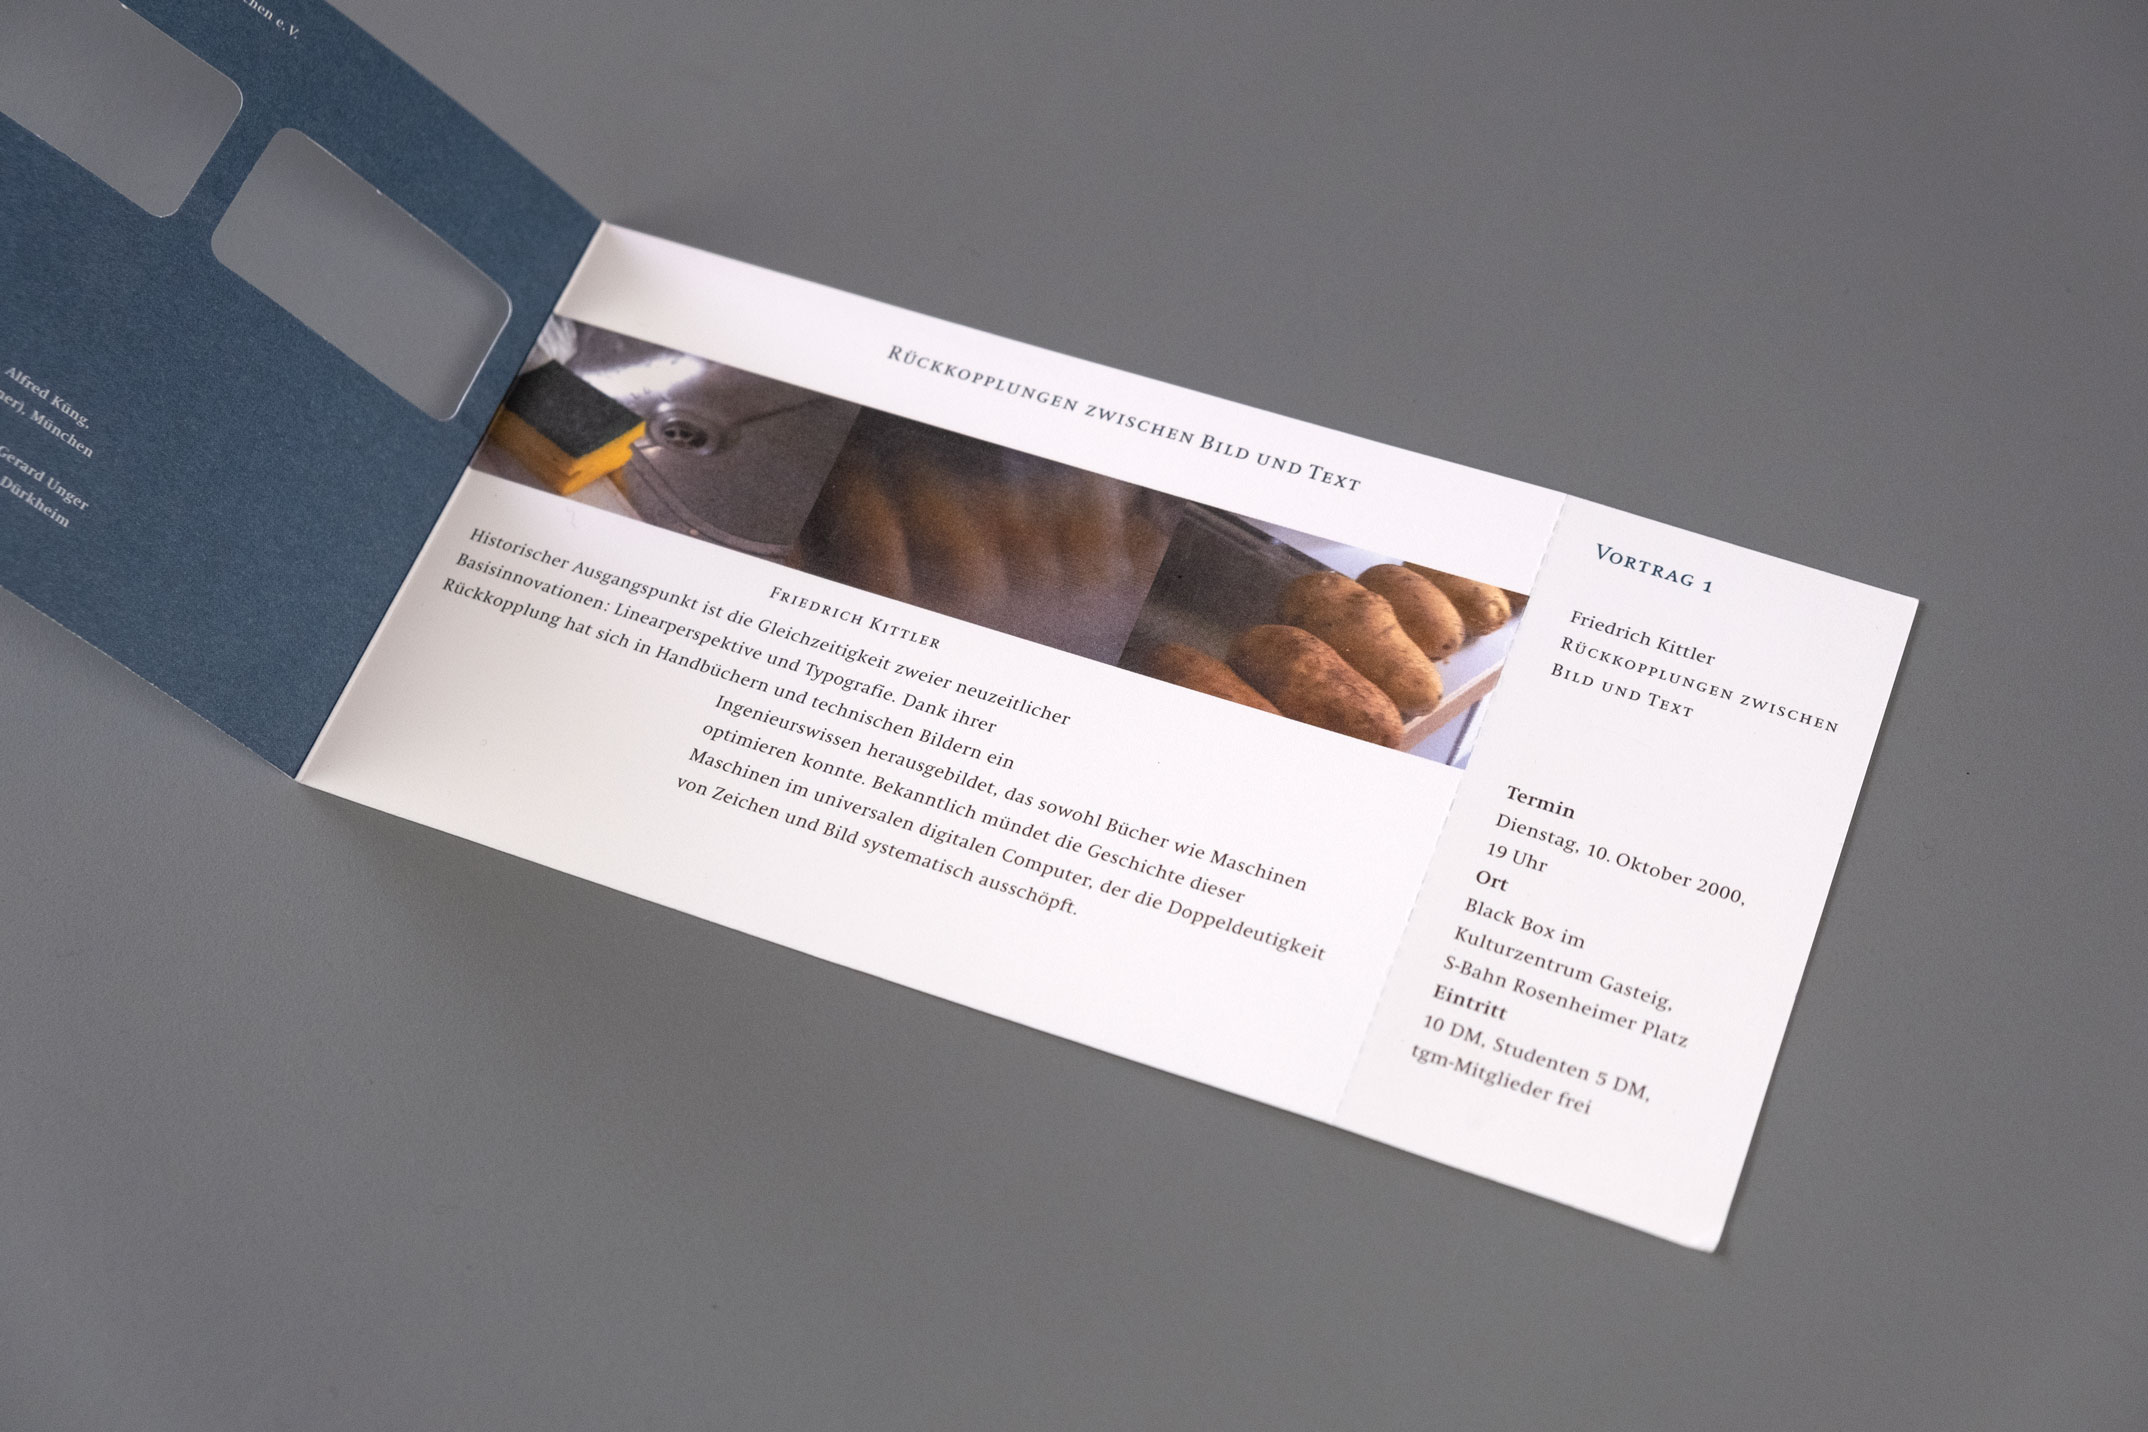 Einladungskarte zum Vortrag Bild und Text, Jahresthema: Spannungsfeld analog-digital, Typografische Gesellschaft München